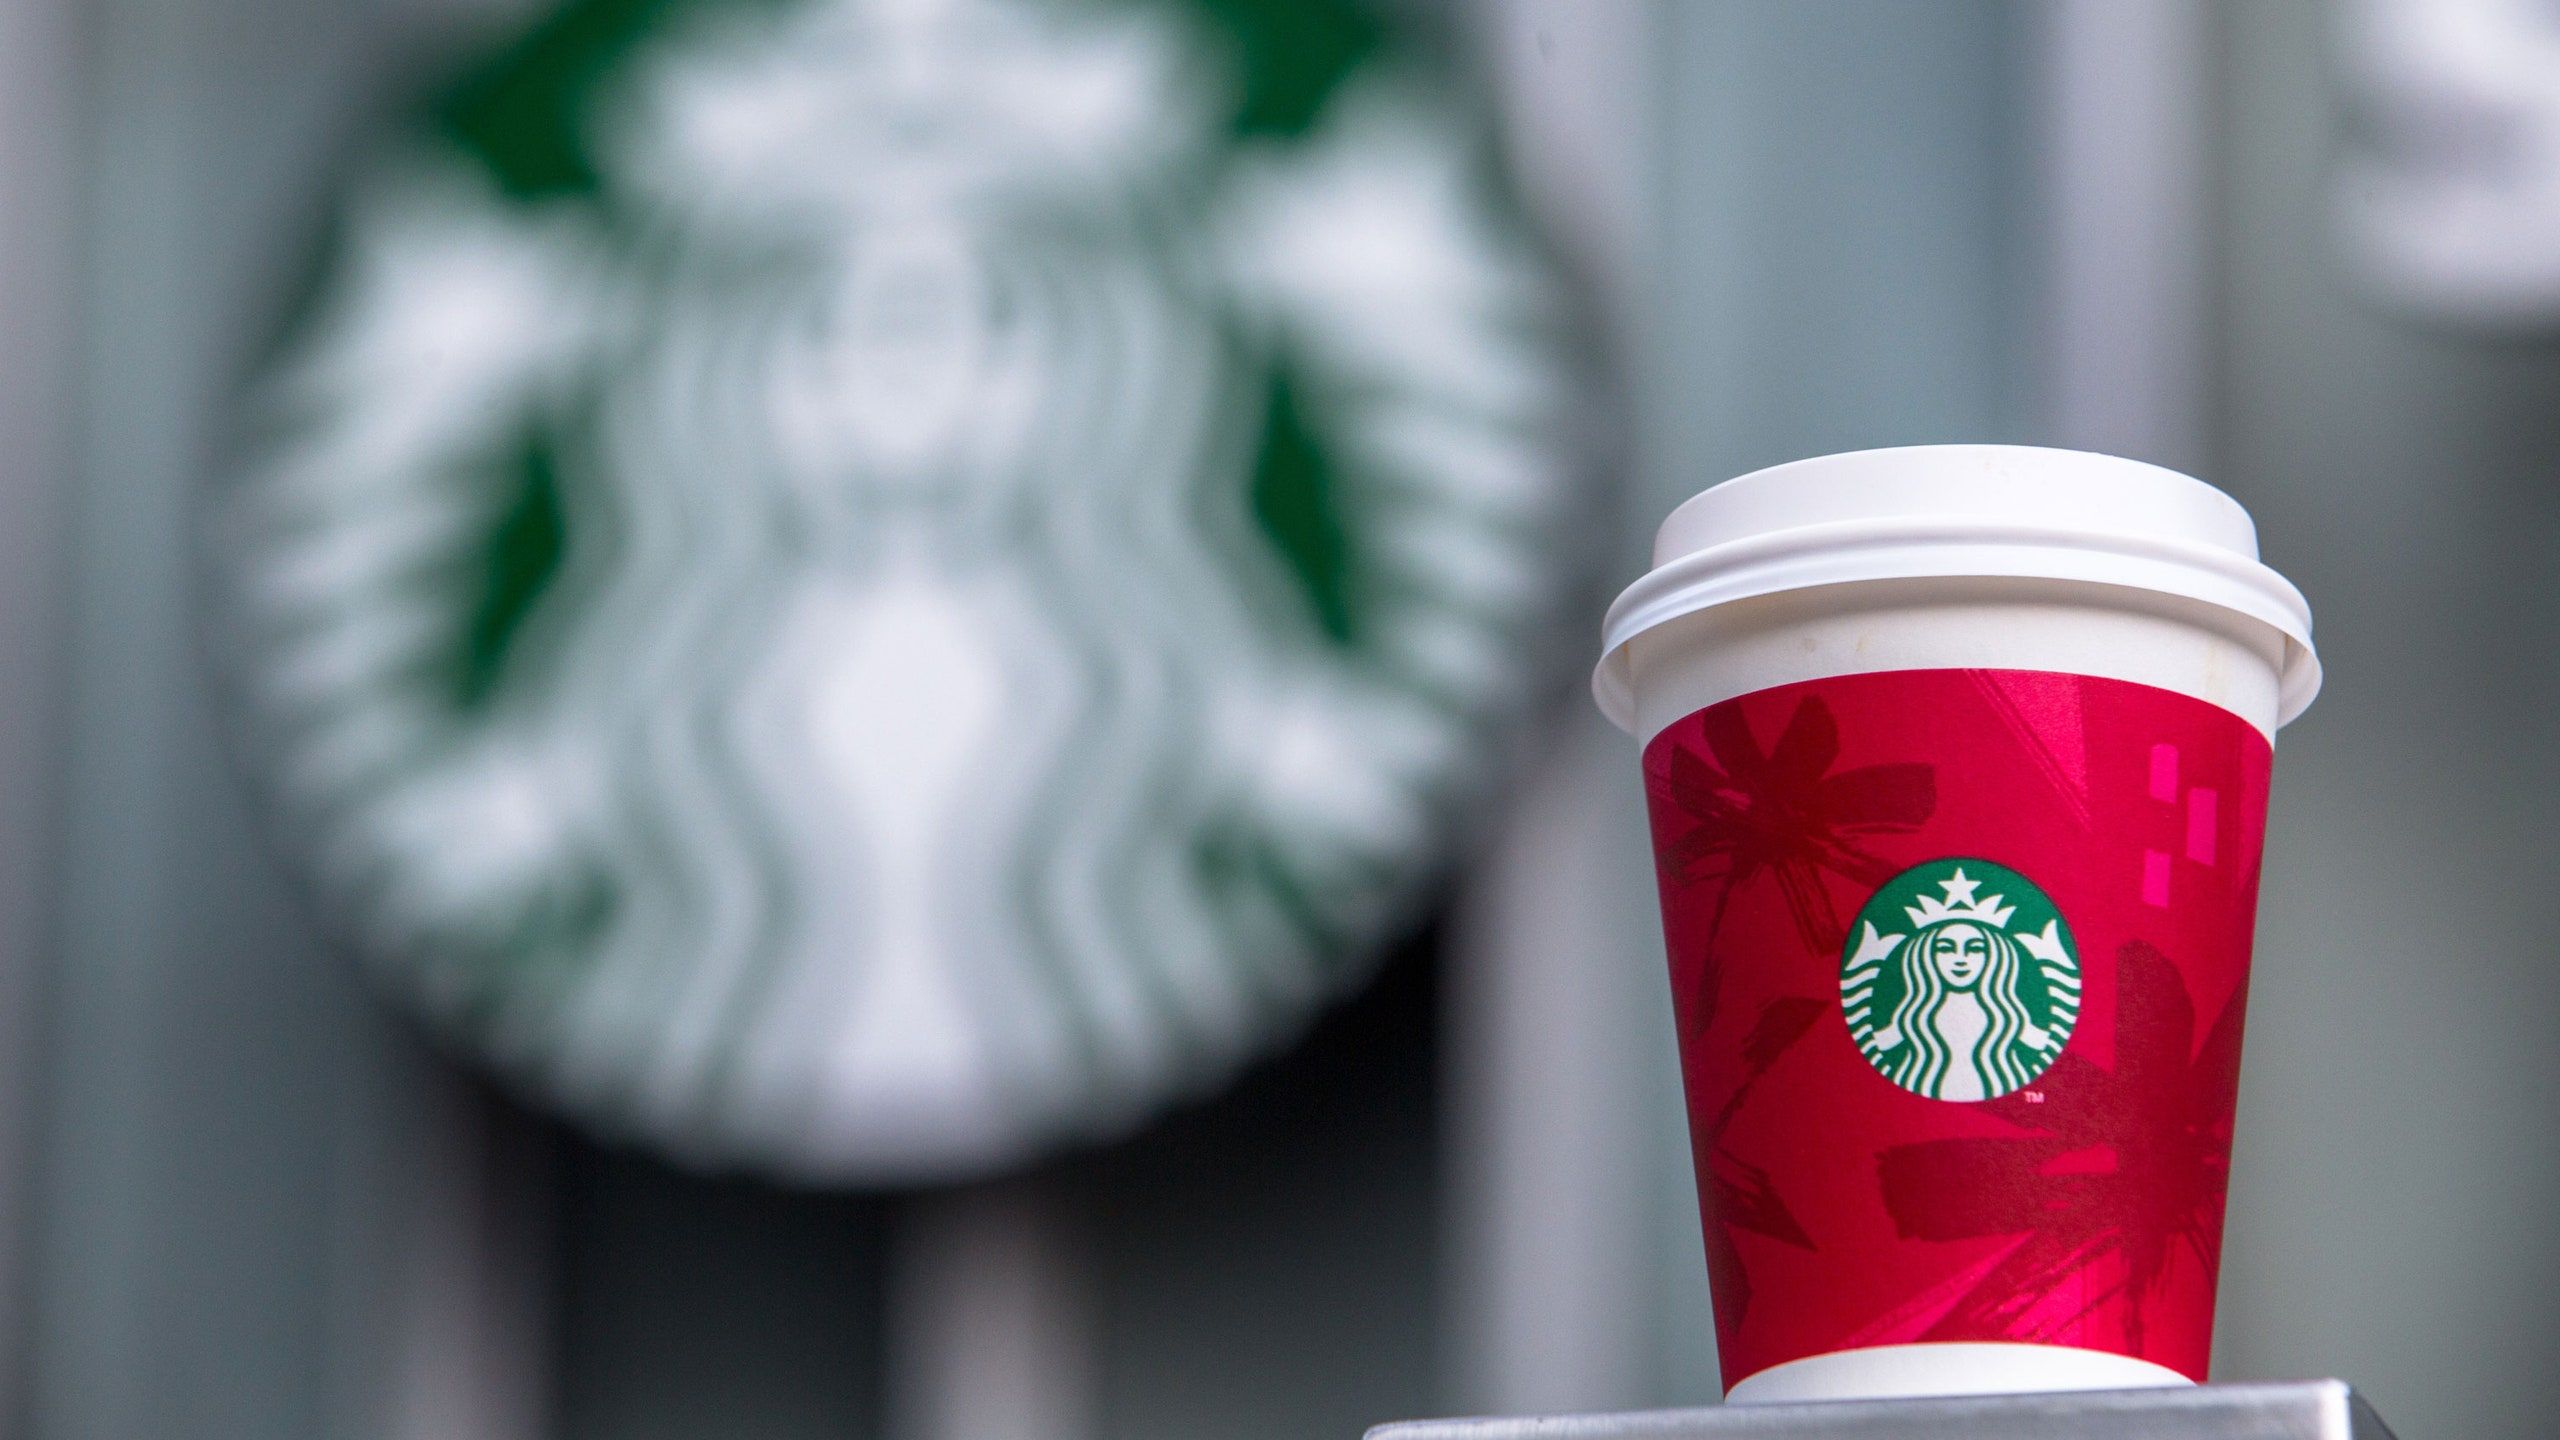 Starbucks Releases Christmas Tree Inspired Juniper Latte